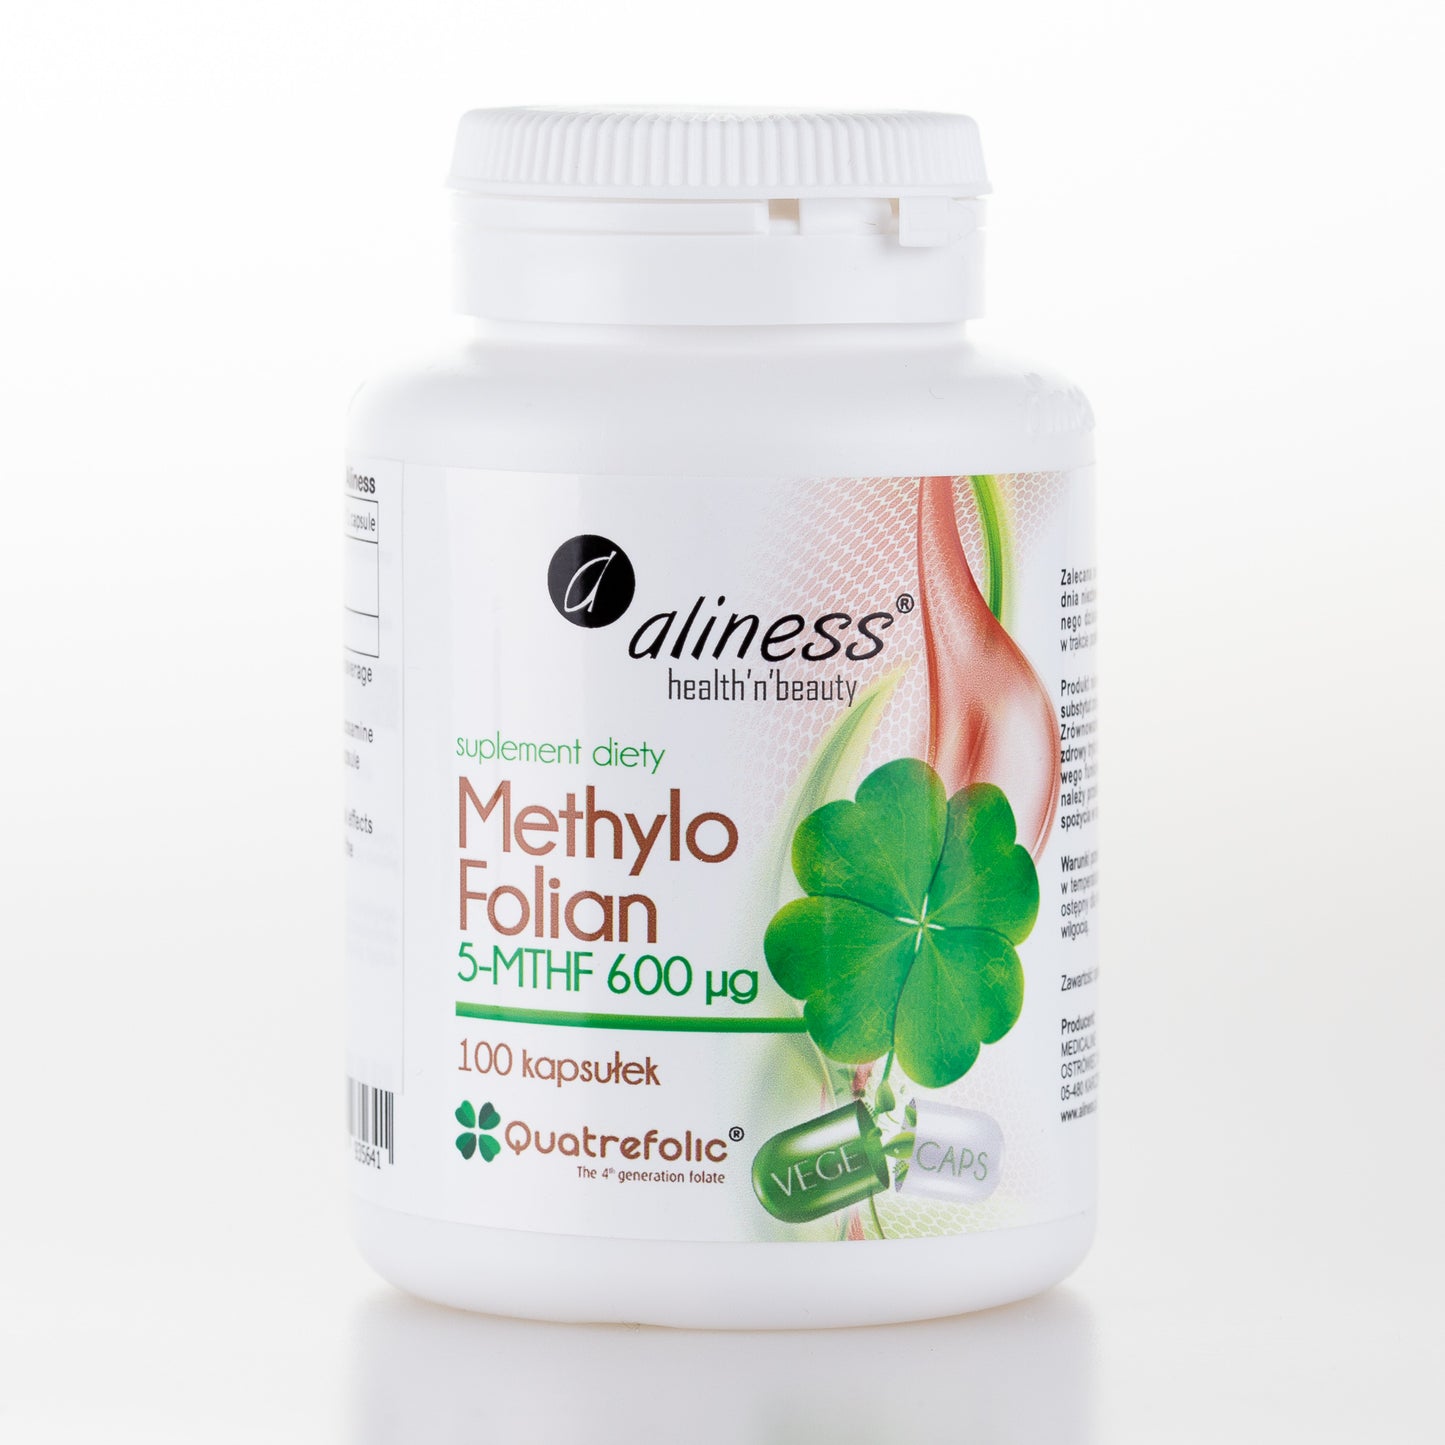 Aliness Metylo Folian 5-MTHF 600 μg, 100 kapsułek wegańskich